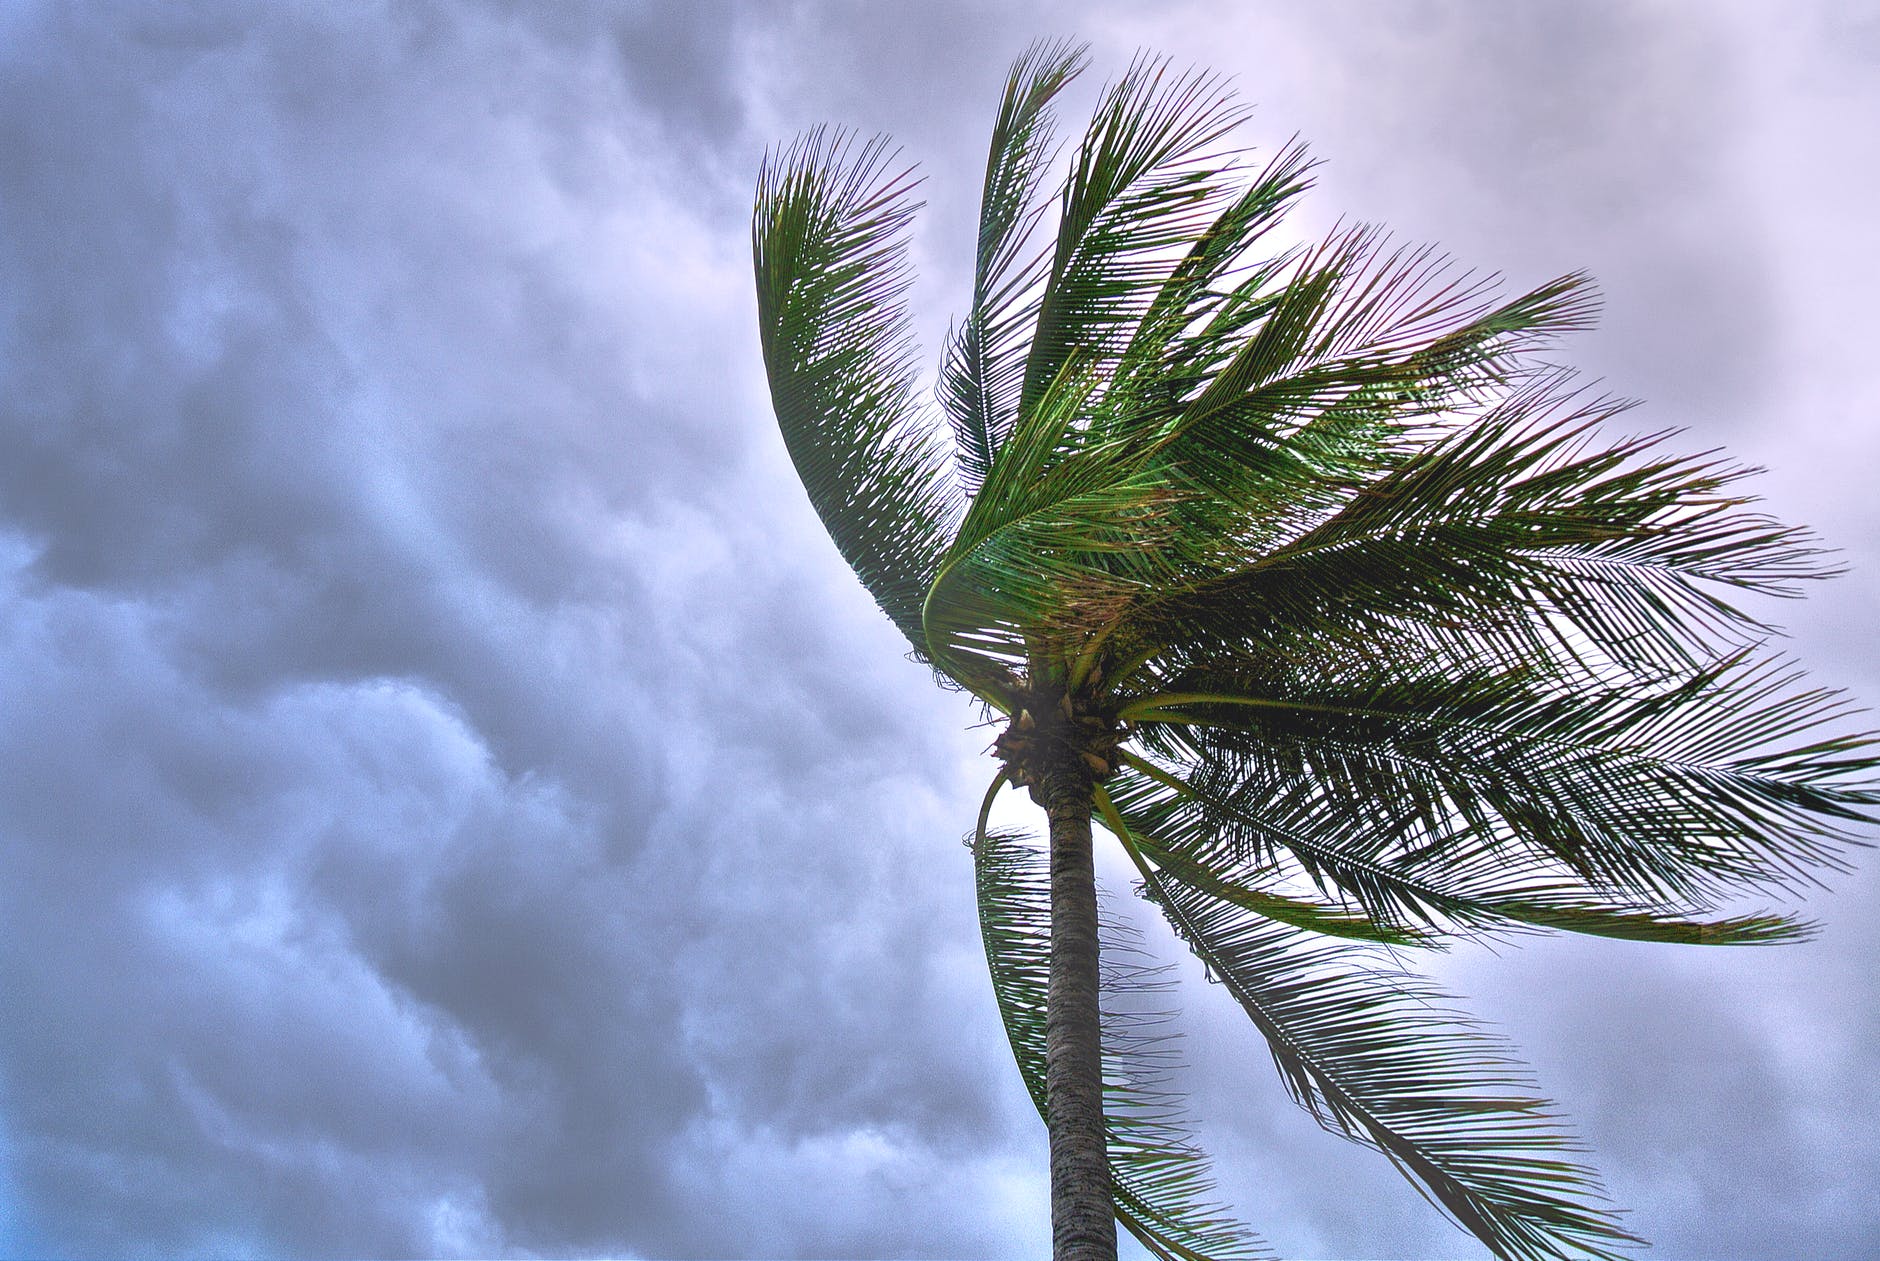 https://www.forbes.com.mx/noticias-dos-tormentas-se-dirigen-simultaneamente-a-costas-del-golfo-de-mexico-en-un-inusual-fenomeno-meteorologico/